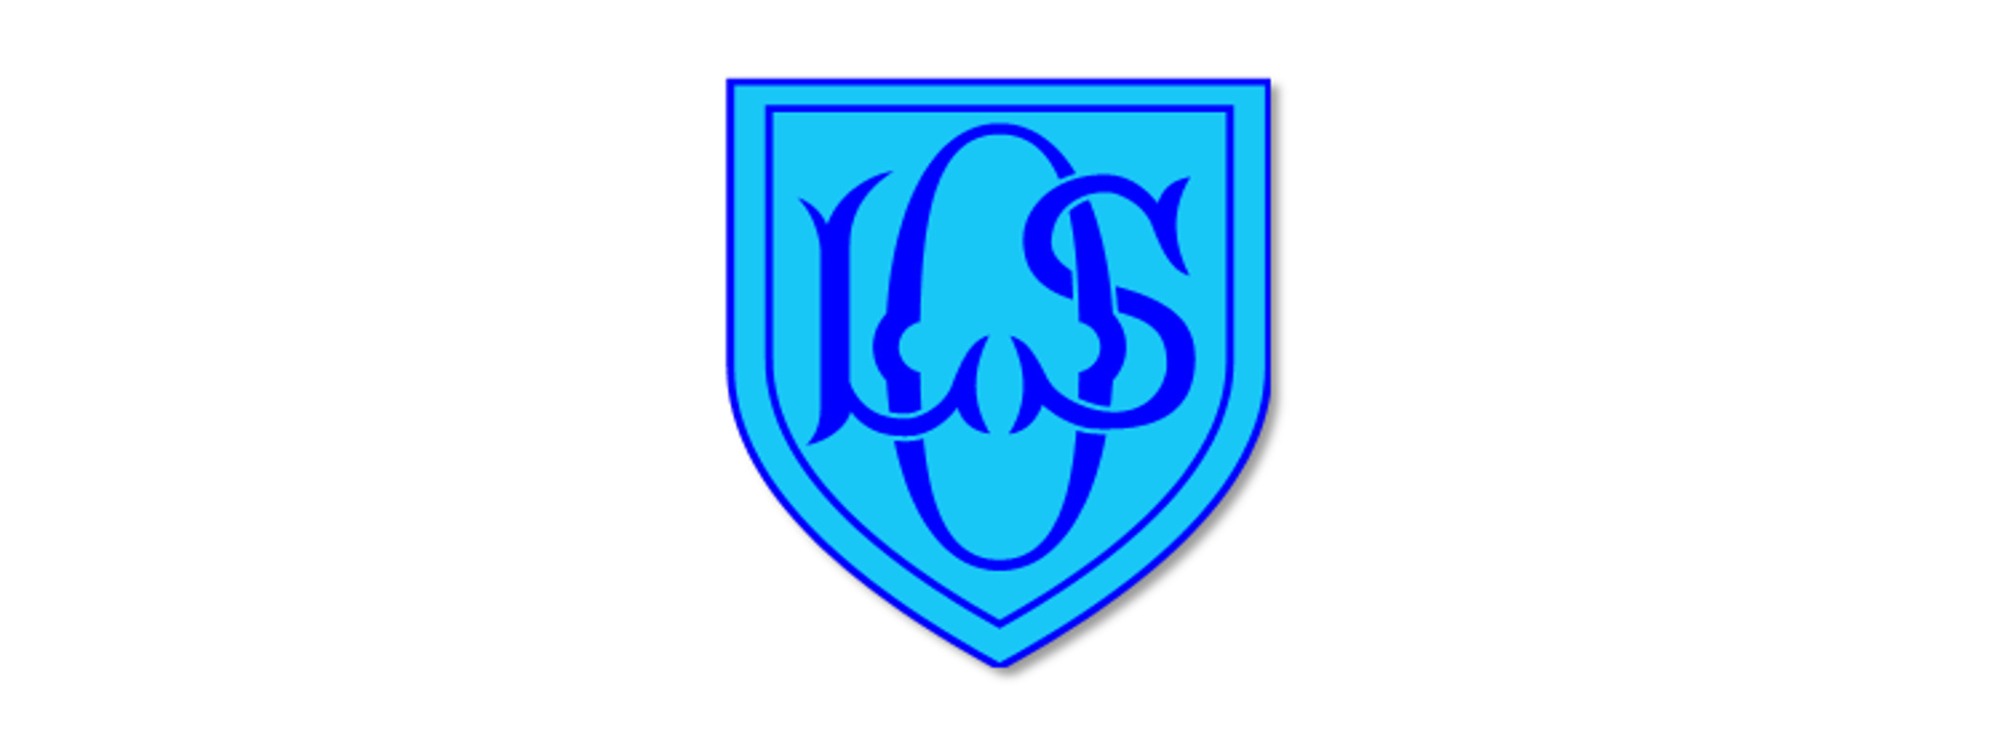 Ols school logo header